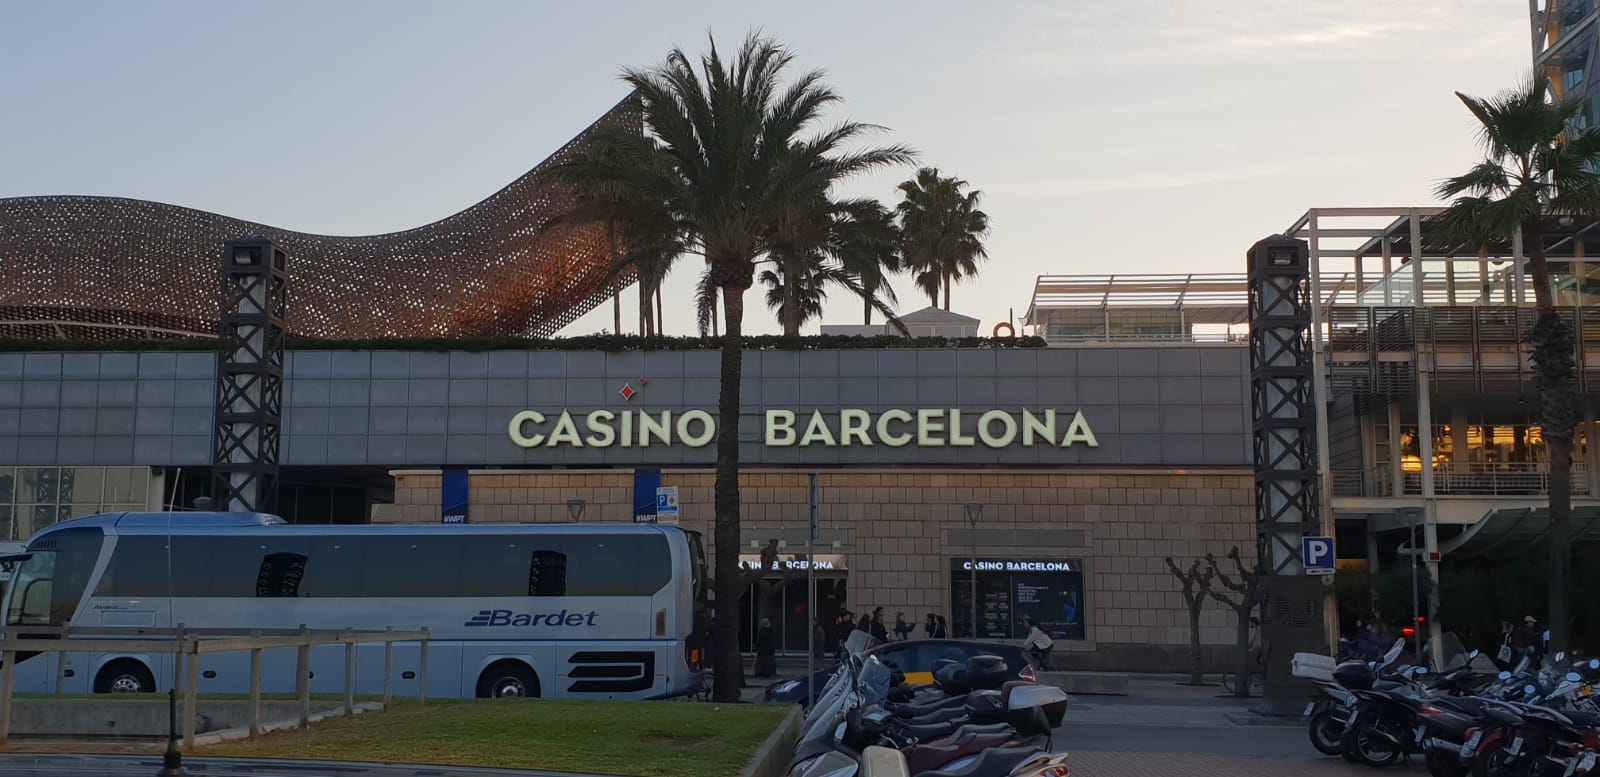 WPT Barcelona:  Team ONK Poker in vliegtuig vol pokerspelers naar Barcelona